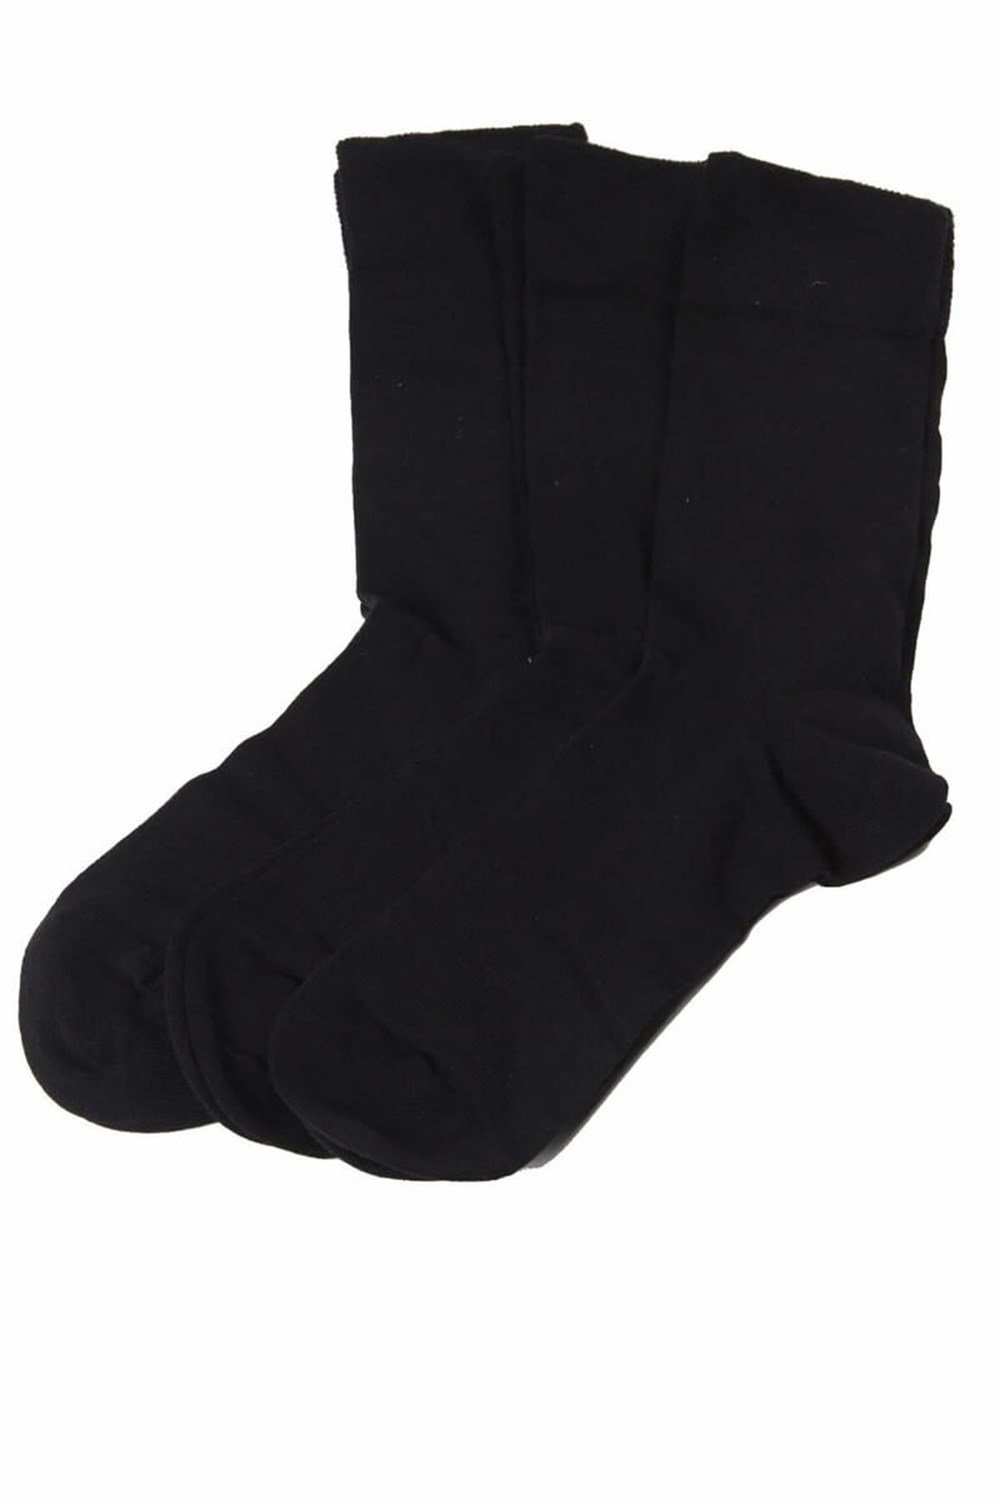 Erkek Siyah Soket Çorap 3lü - DZNCP3201 - Darkzone